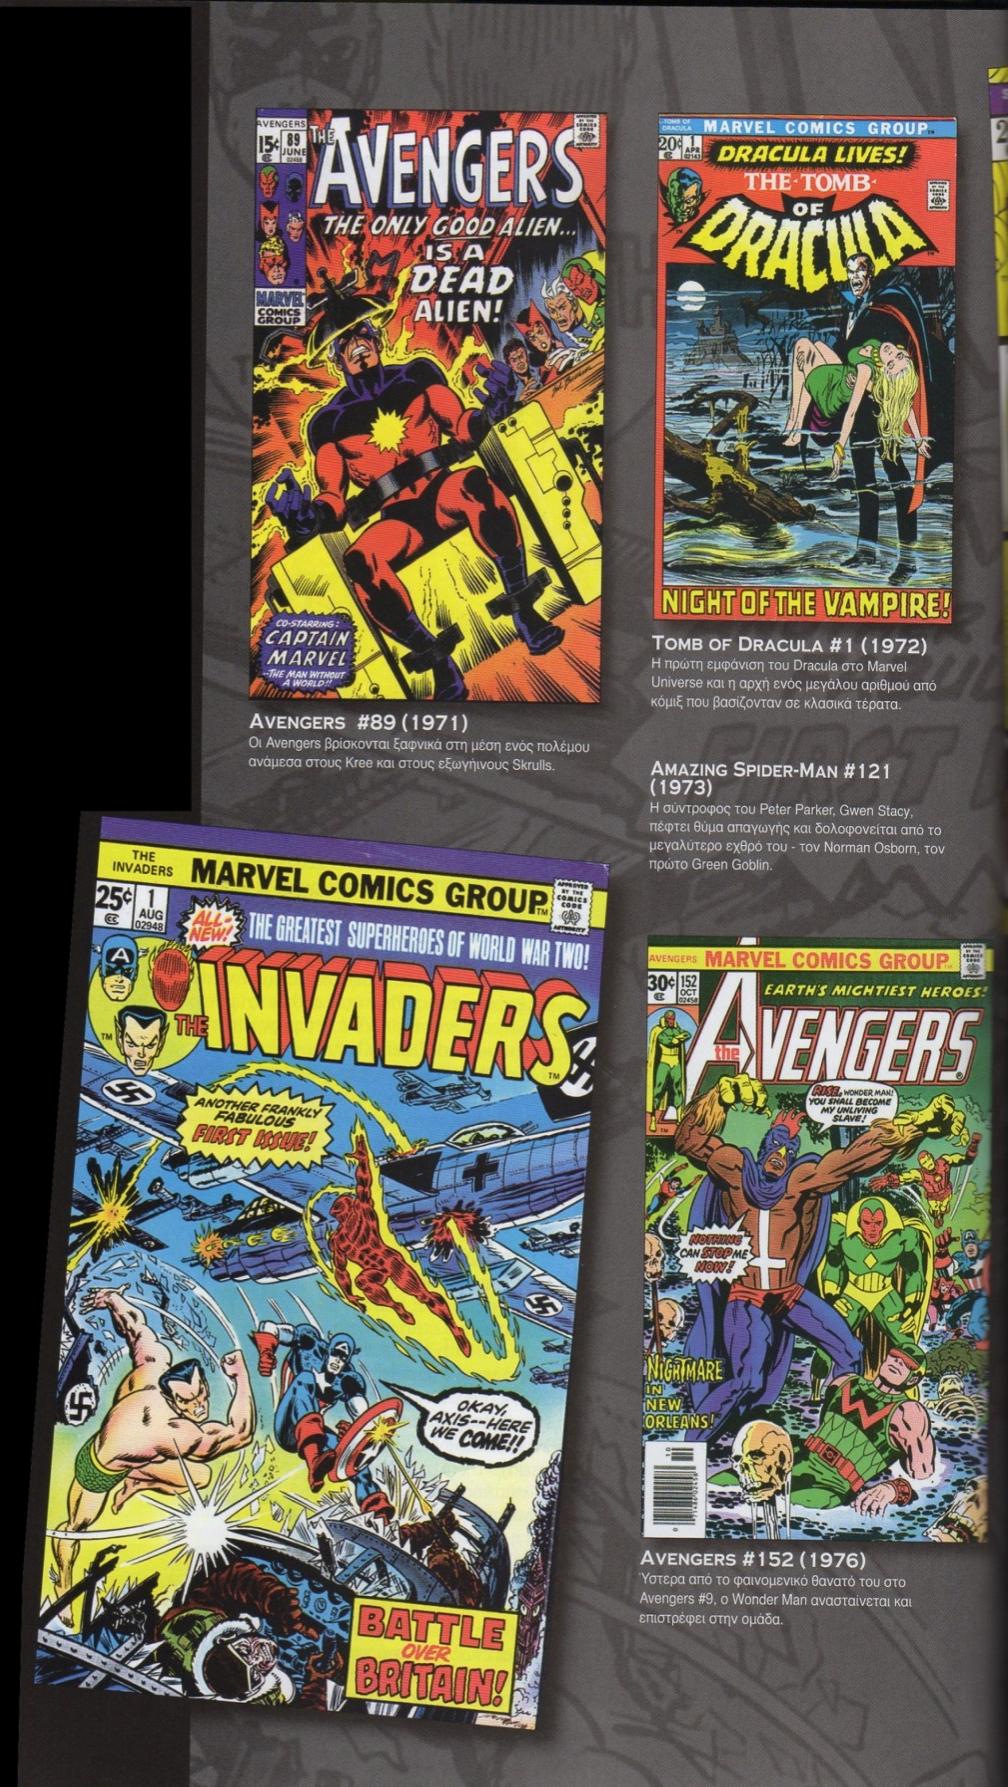 Δεκαετία 1970 Θ Marvel Comics άρχιςε να πειραματίηεται με τθ ςειρά των κόμιξ τθσ κατά τθ διάρκεια τθσ δεκαετίασ του 1970.